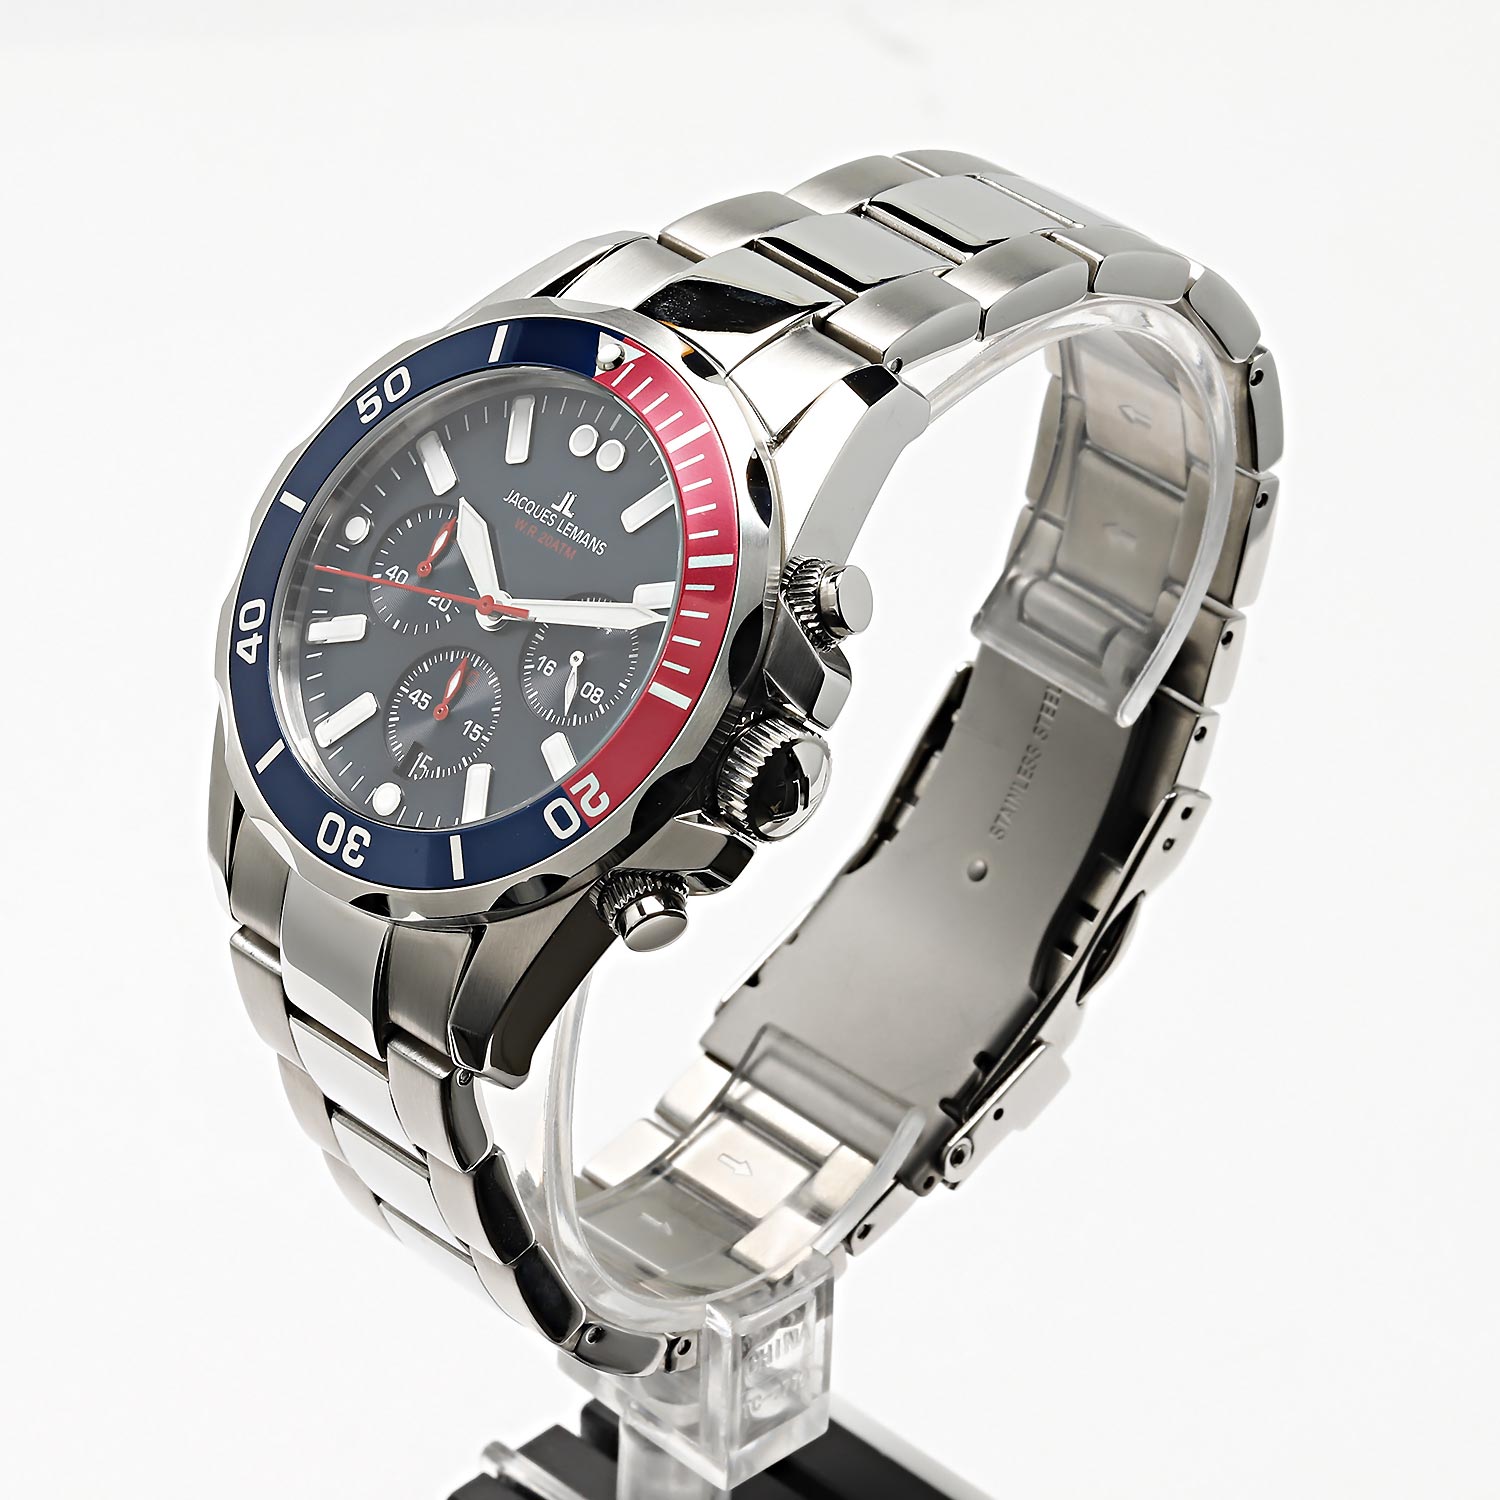 Наручные часы Jacques Lemans 1-2091G характеристики, описание в цене, AllTime.ru интернет-магазине лучшей купить фото, — инструкция, по